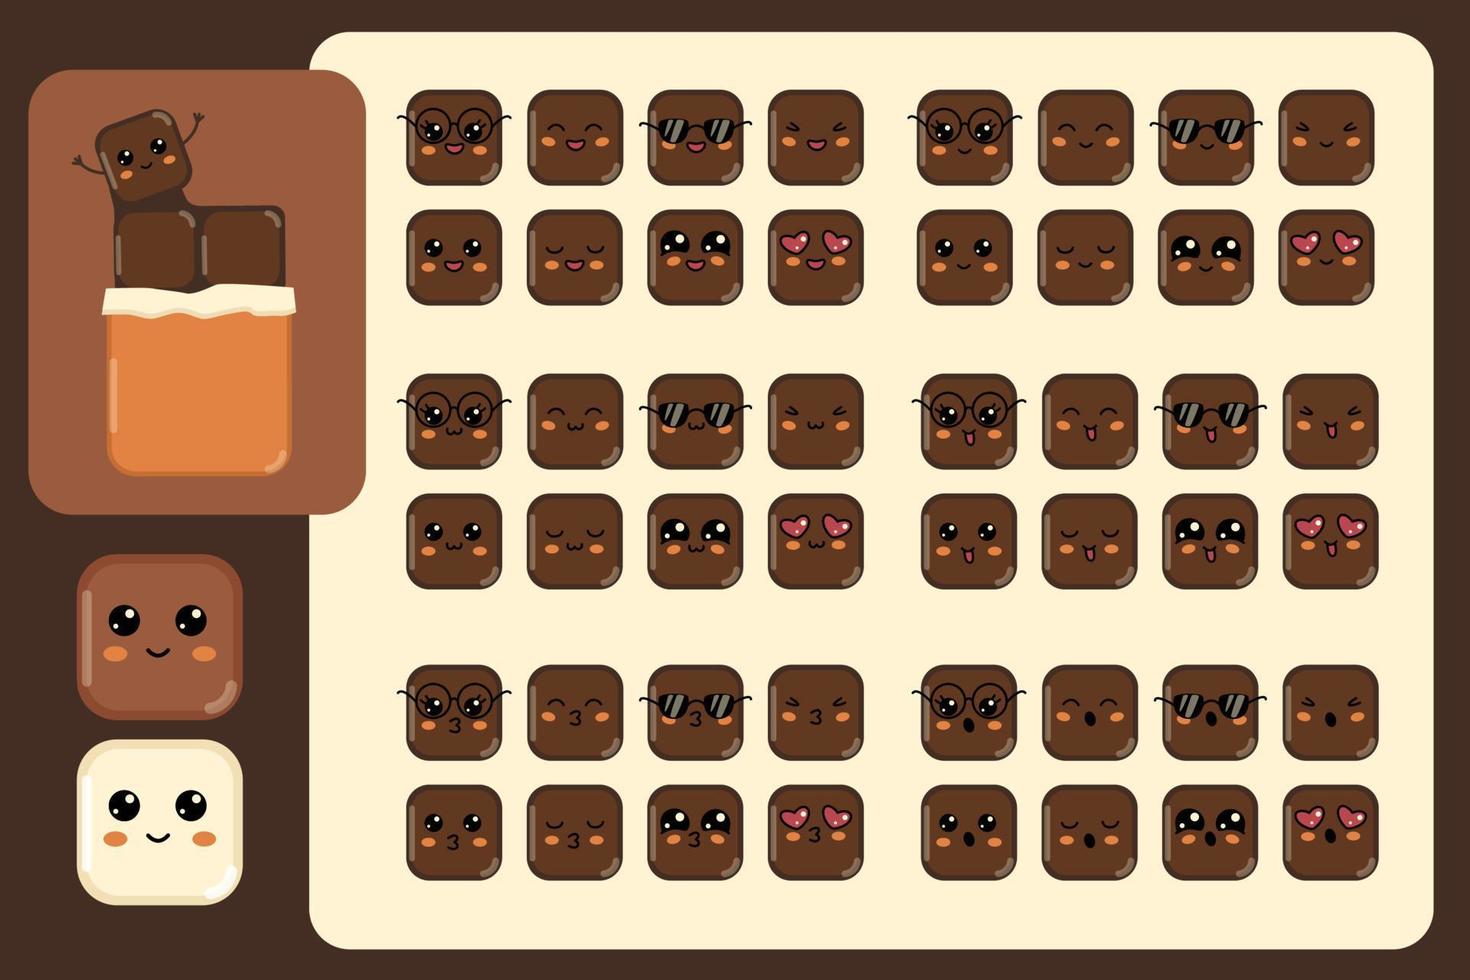 pedazo de barra de chocolate lindo personaje kawaii, diferentes expresiones cara de cubo dulce, feliz beso sonriente sorprendido entrecerrar los ojos kawaii iconos de avatar leche chocolate blanco y negro ilustración vectorial vector